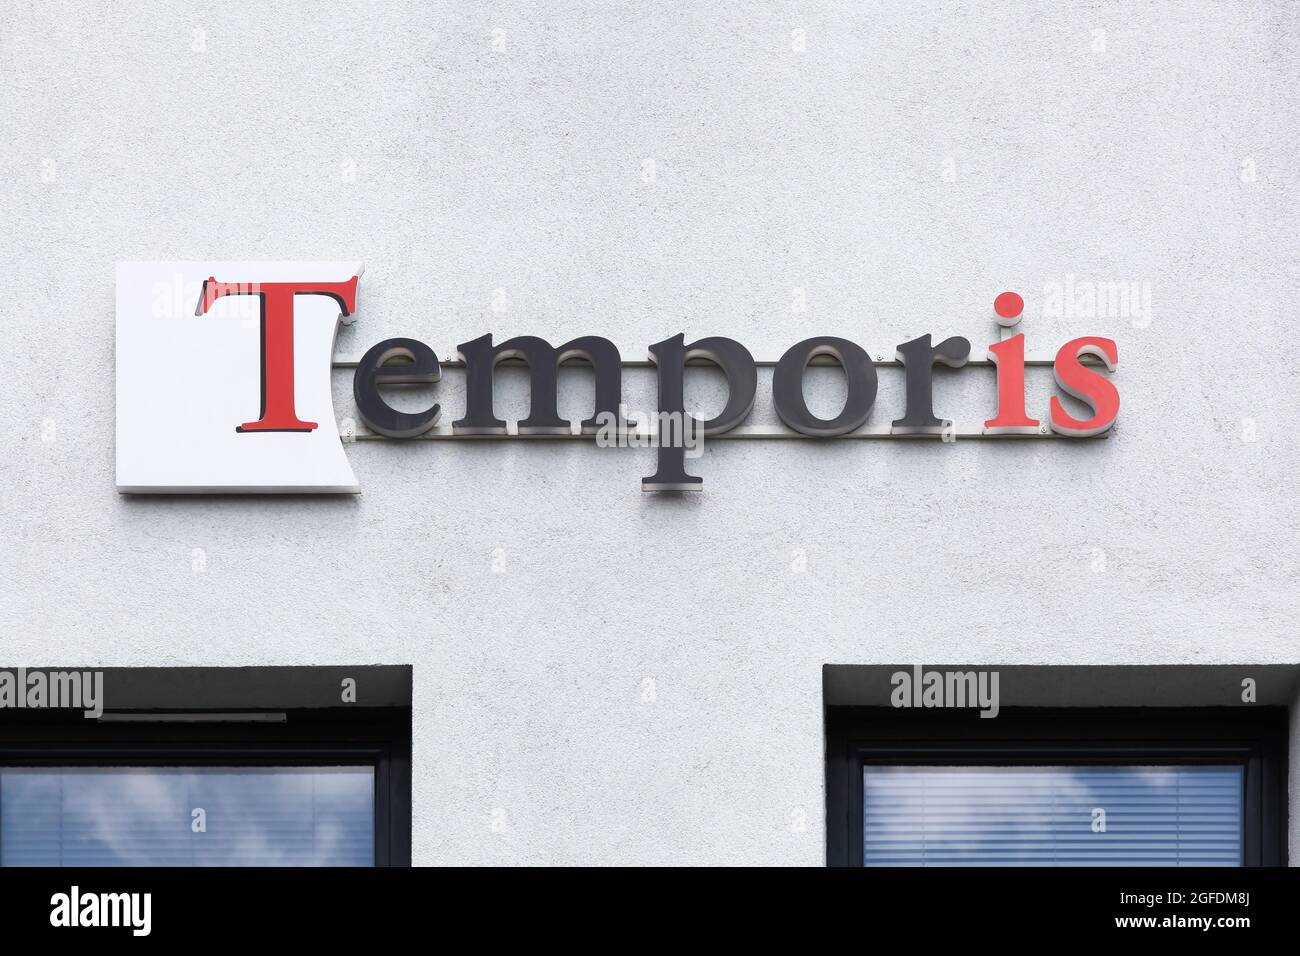 Villefranche, Frankreich - 10. Juli 2021: Temporis-Logo auf einem Gebäude. Temporis ist das führende französische Franchise-Netzwerk für Zeitarbeit und Personalbeschaffung Stockfoto